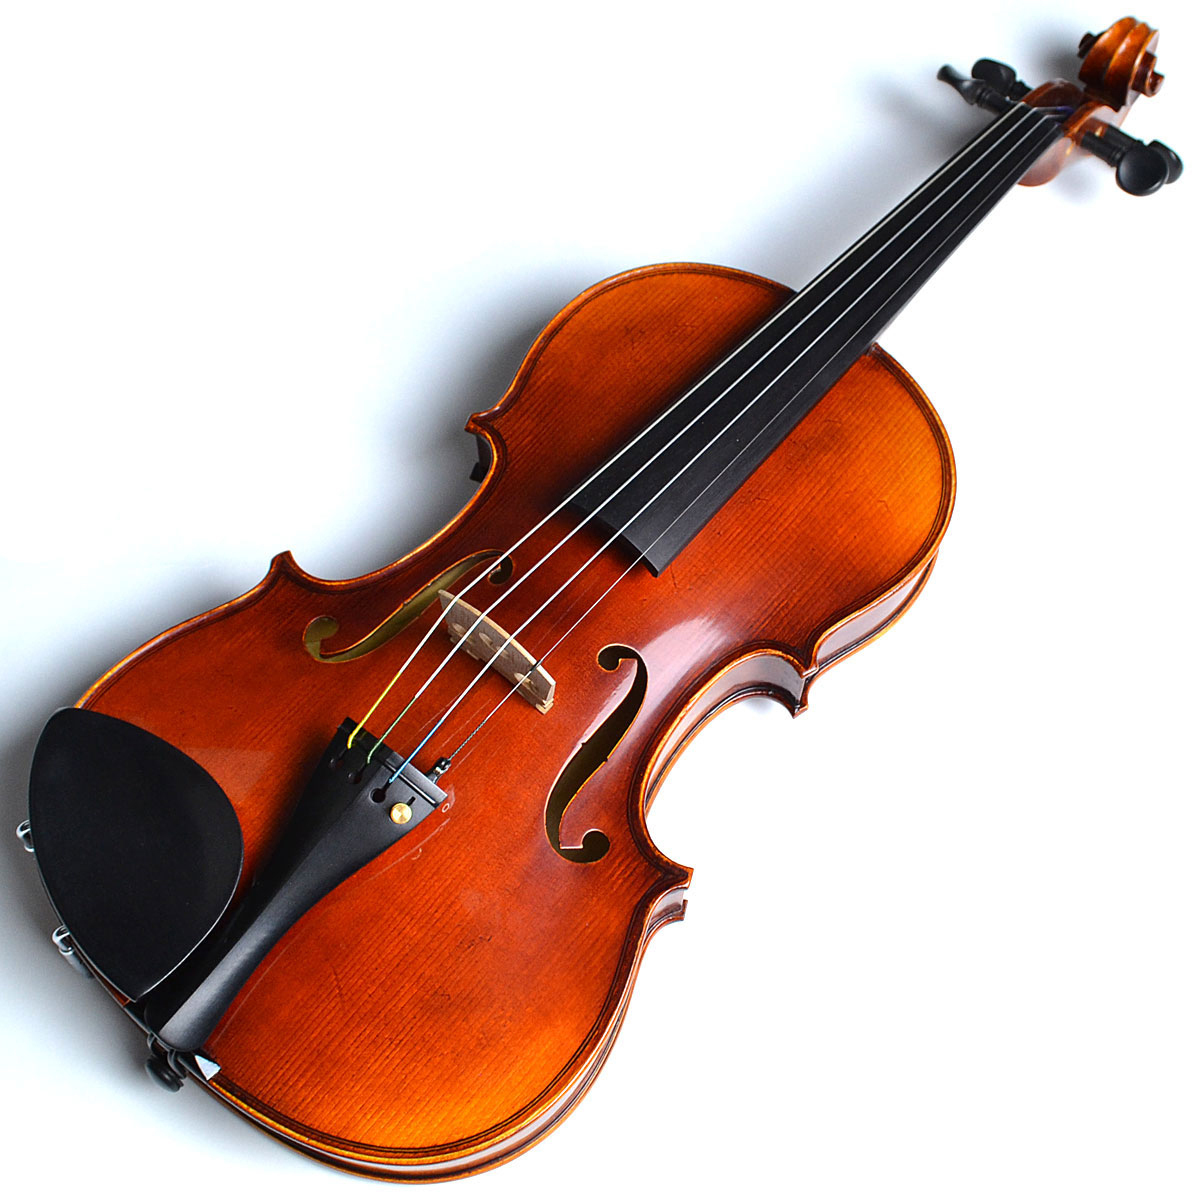 *GEWA MeisterⅡのご紹介 バイオリン教室に通う方におすすめ！日本人の手に馴染むバイオリンセットです。 *楽しみは今すぐ、お支払いは少しづつ「無金利キャンペーン」開催中！ **商品情報 本格的なアンティークフィニッシュで風格漂うバイオリン初心者セット]] ドイツ・GEWA社が高い技術を持つ […]